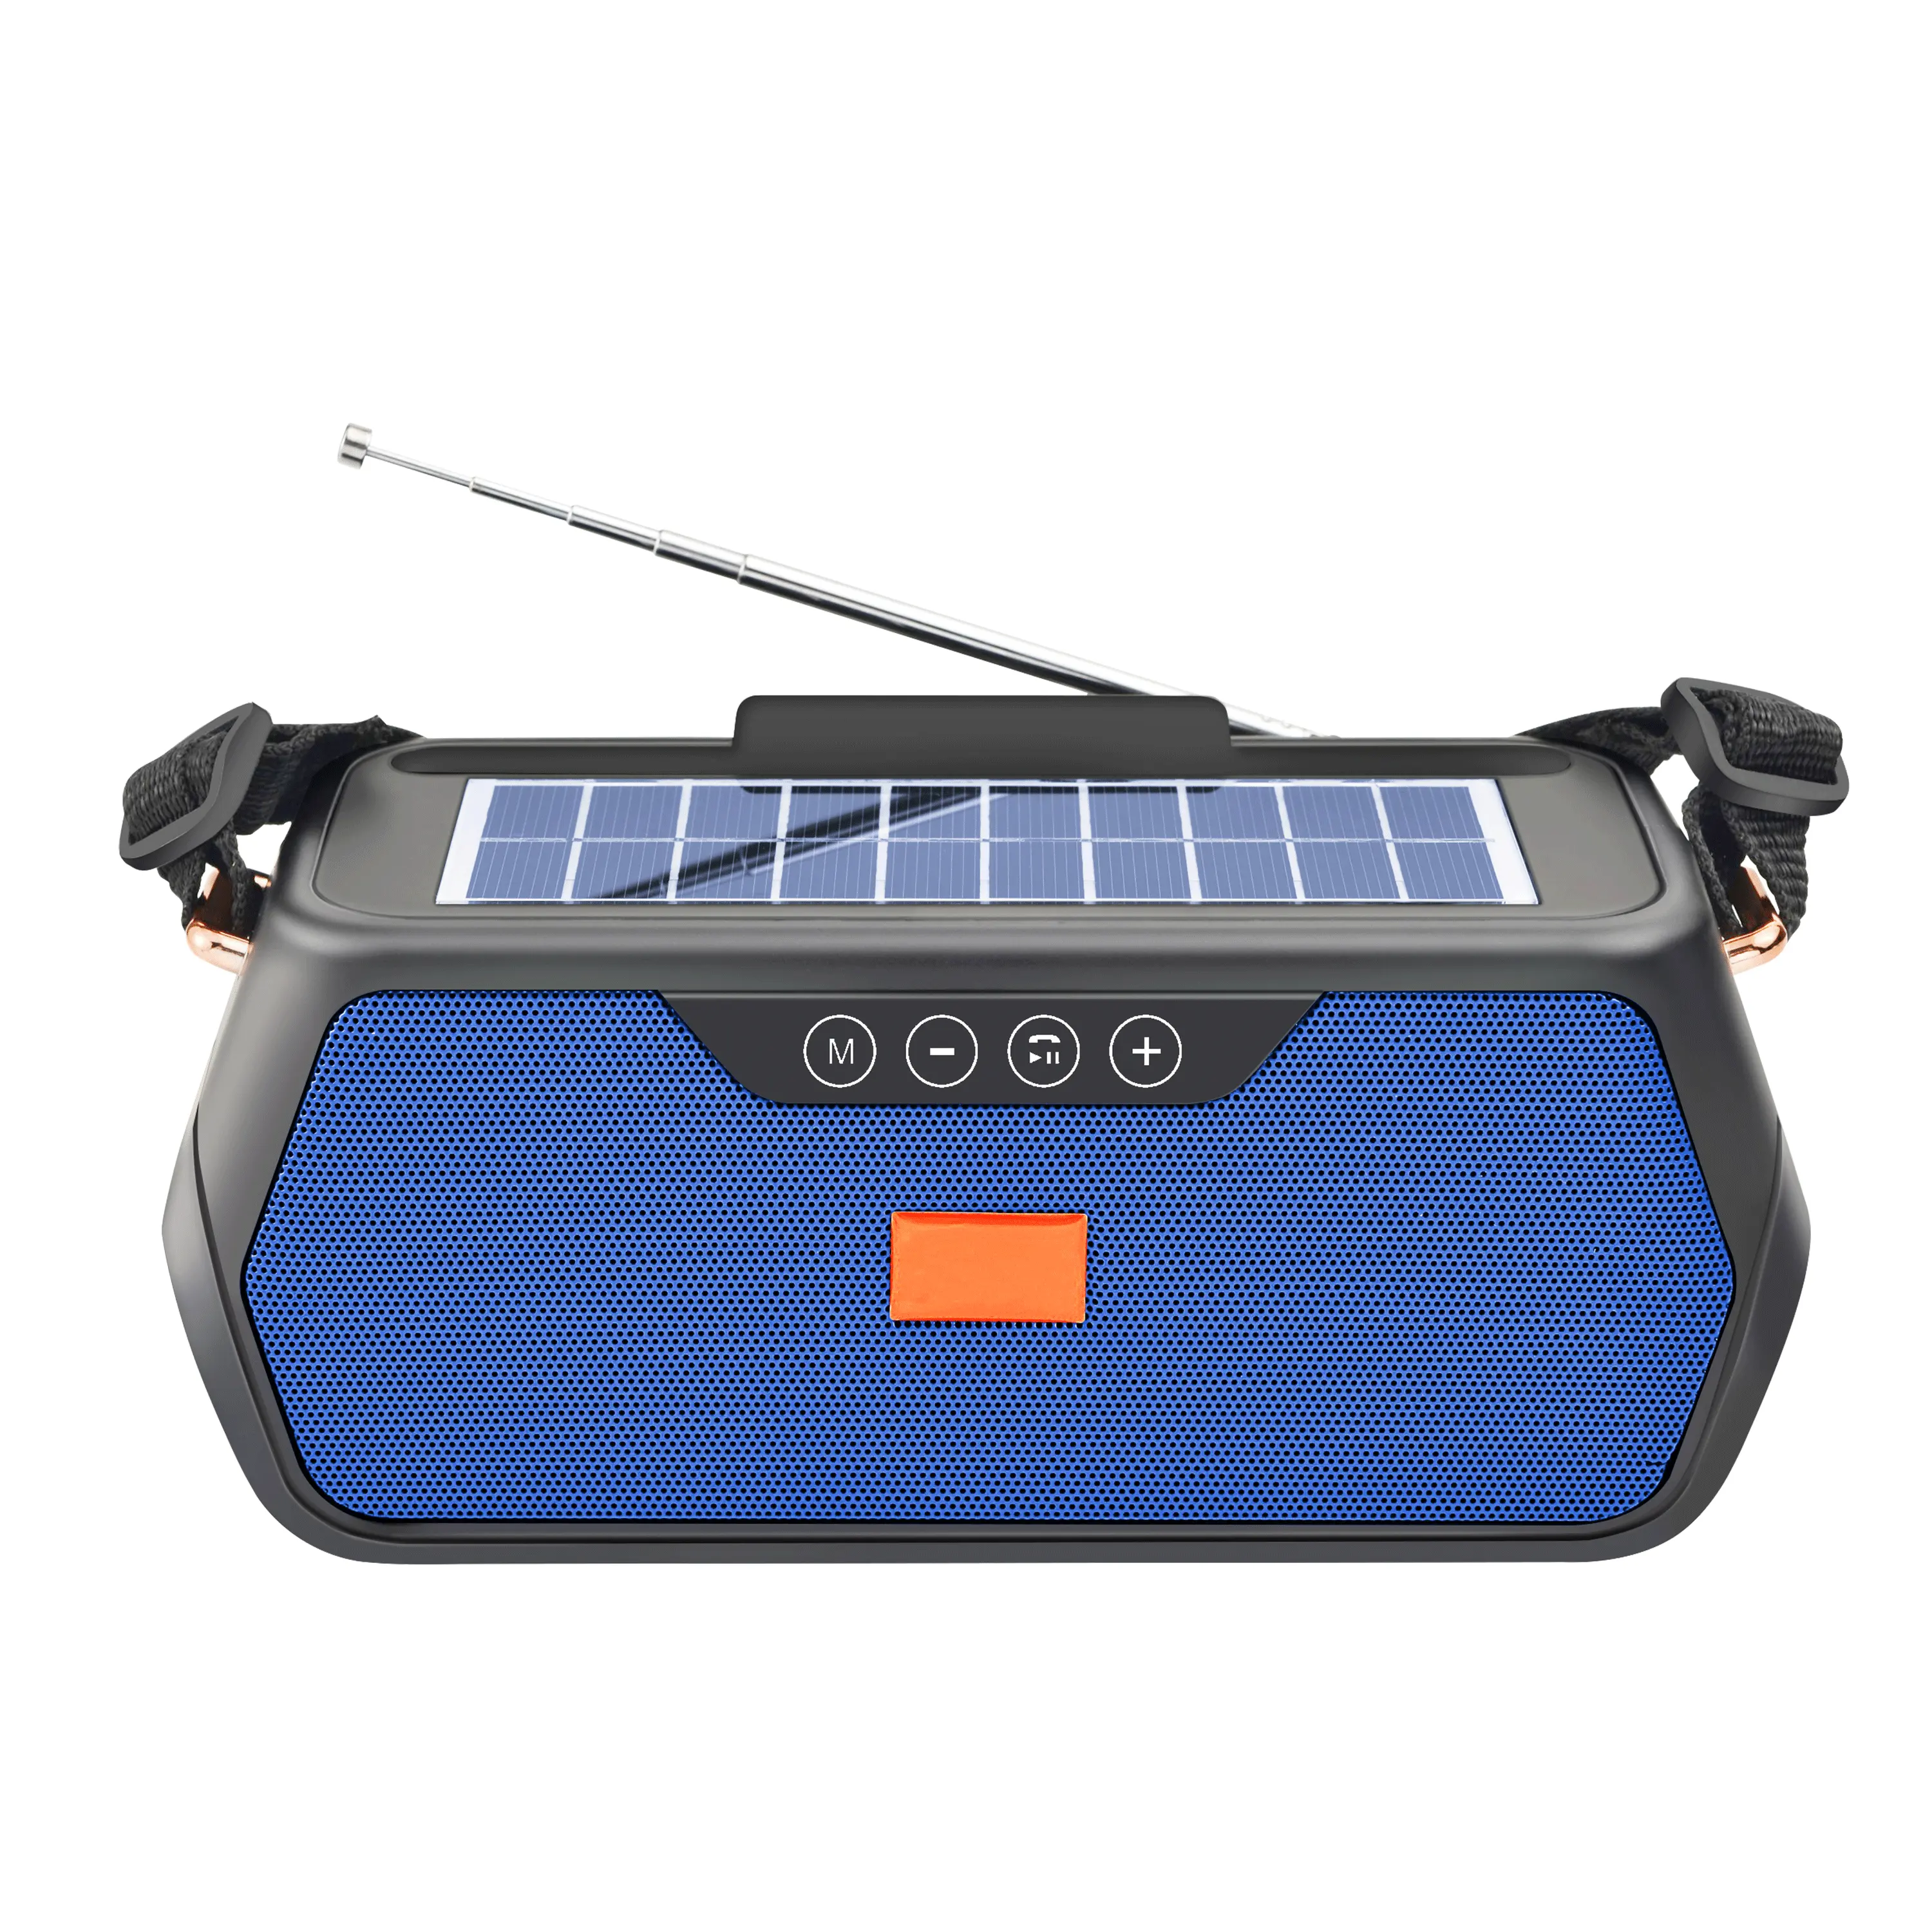 Caixa de som carregamento solar de emergência, rádio azul com rádio fm